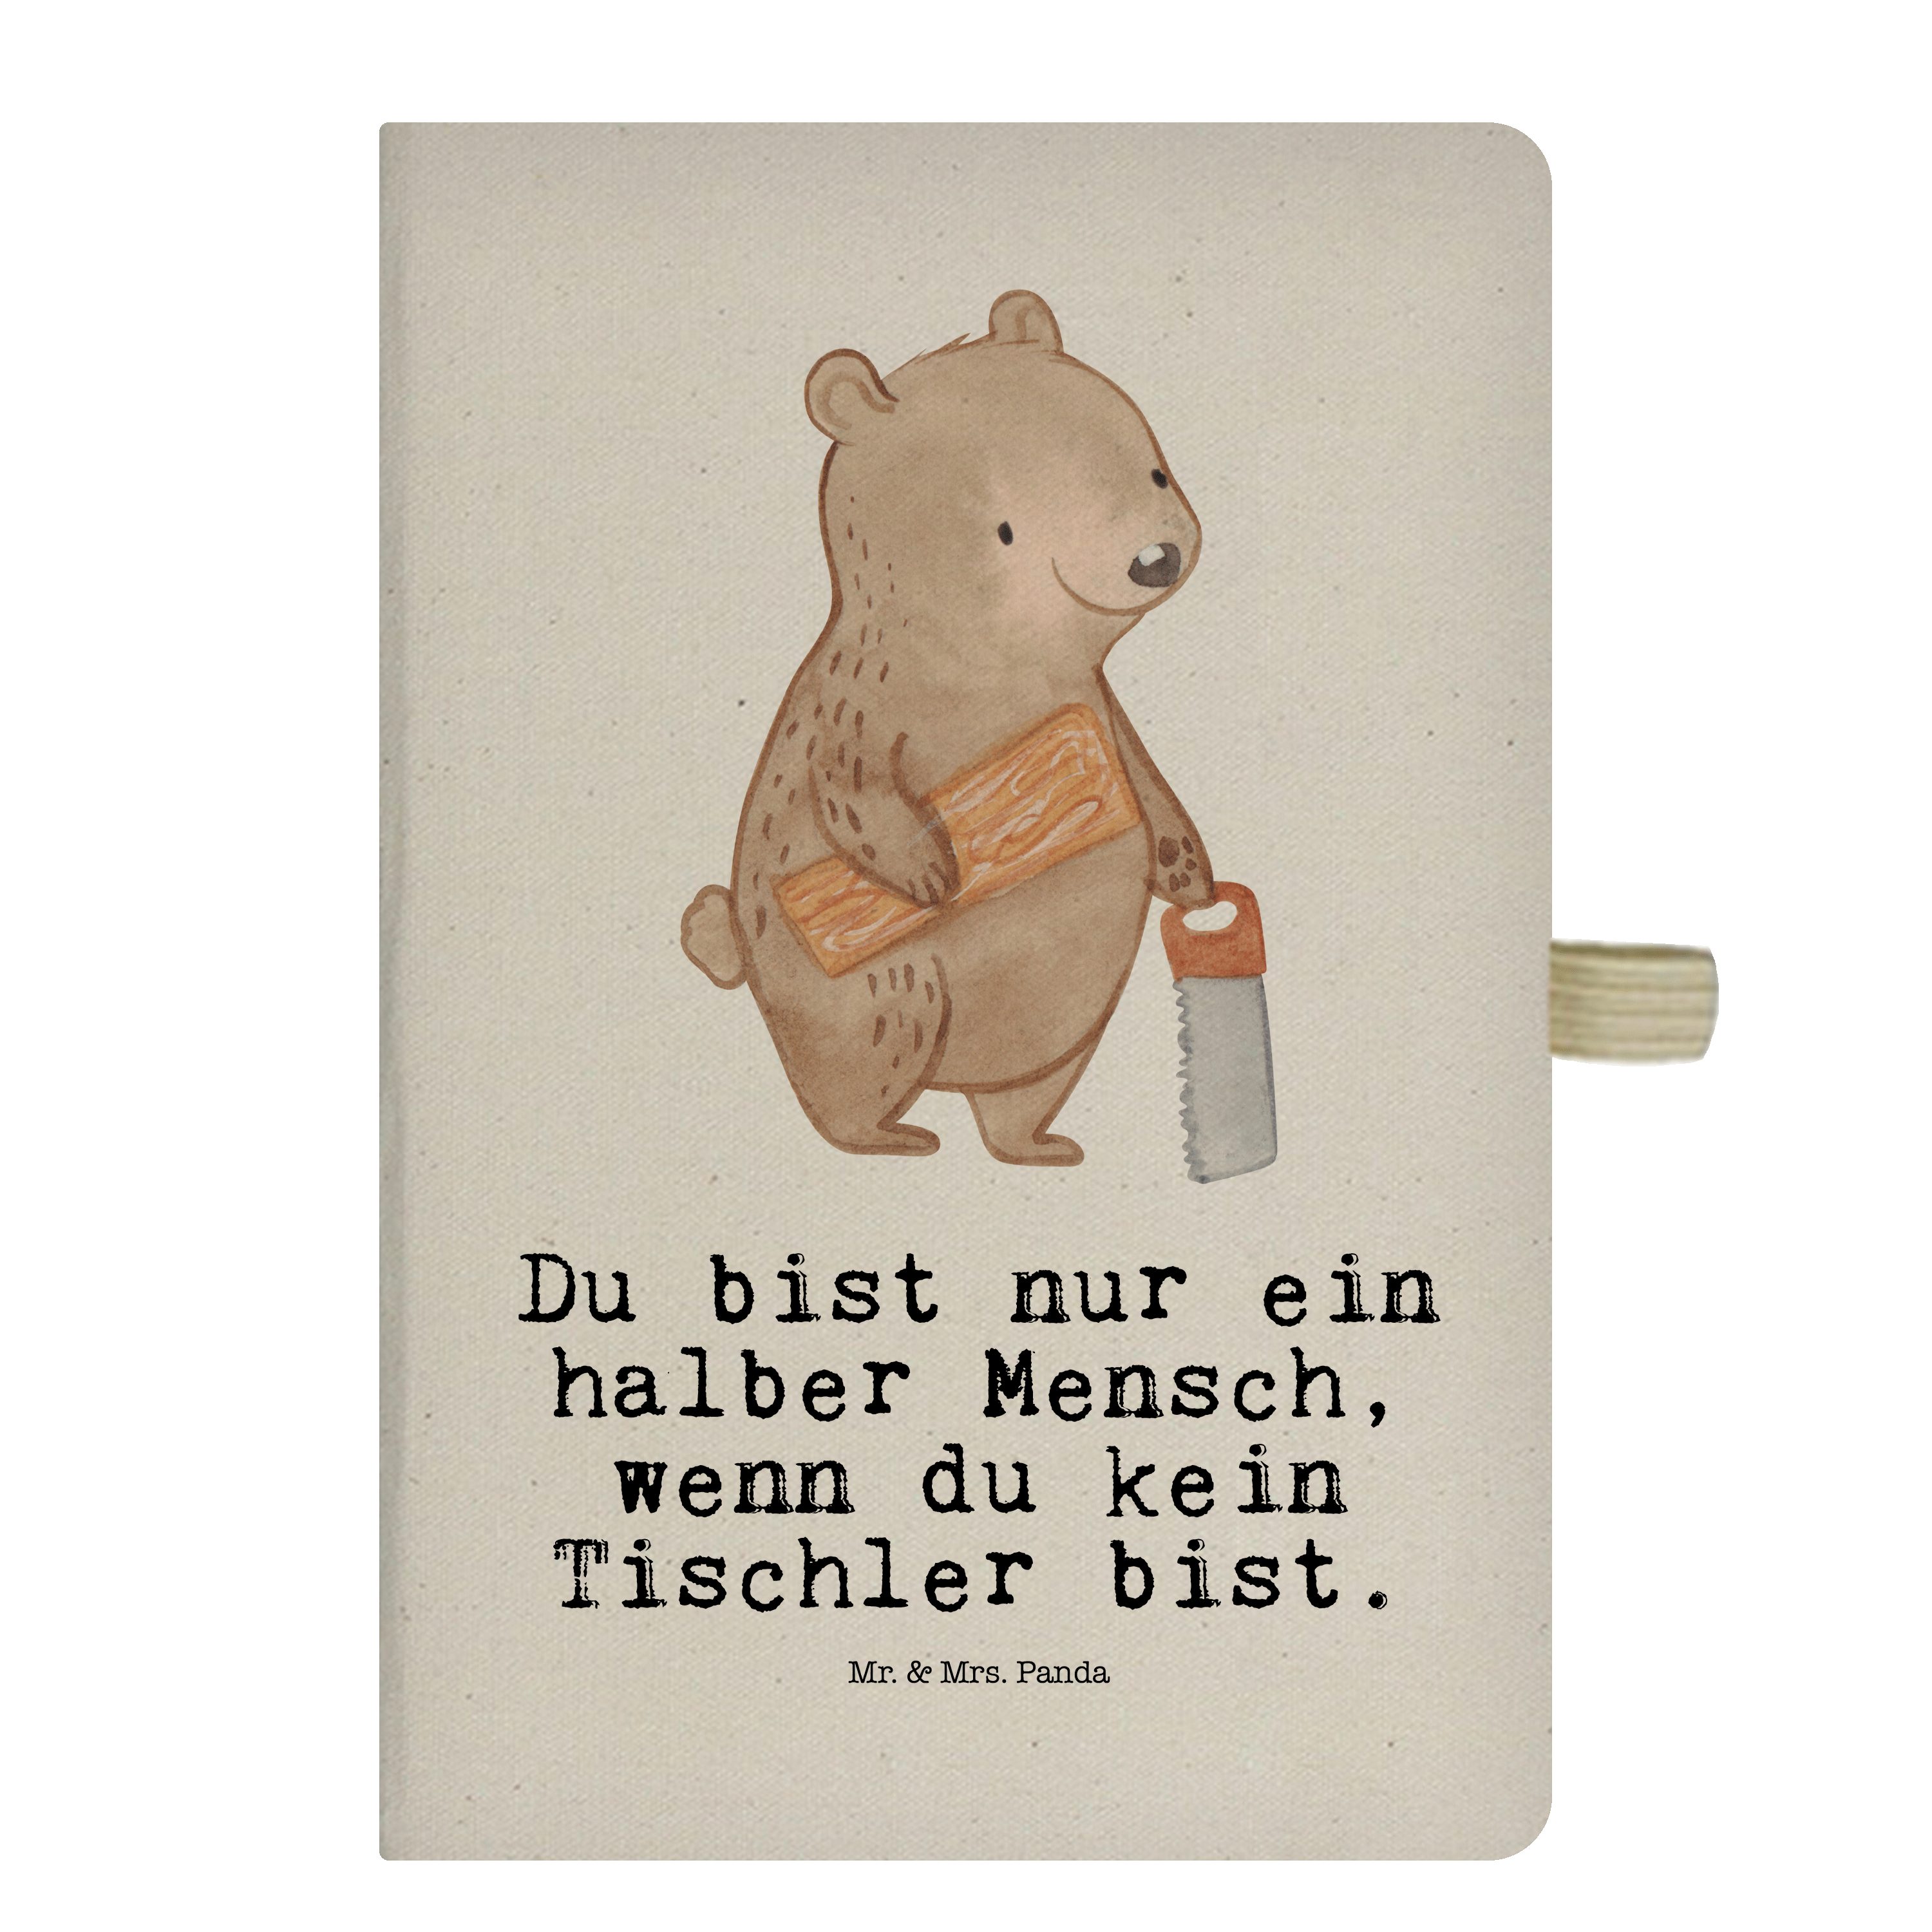 Mr. & Mrs. Panda Notizbuch & Geschenk, Tischler Mrs. Panda Ad Schreibbuch, - Herz - mit Tagebuch, Transparent Mr